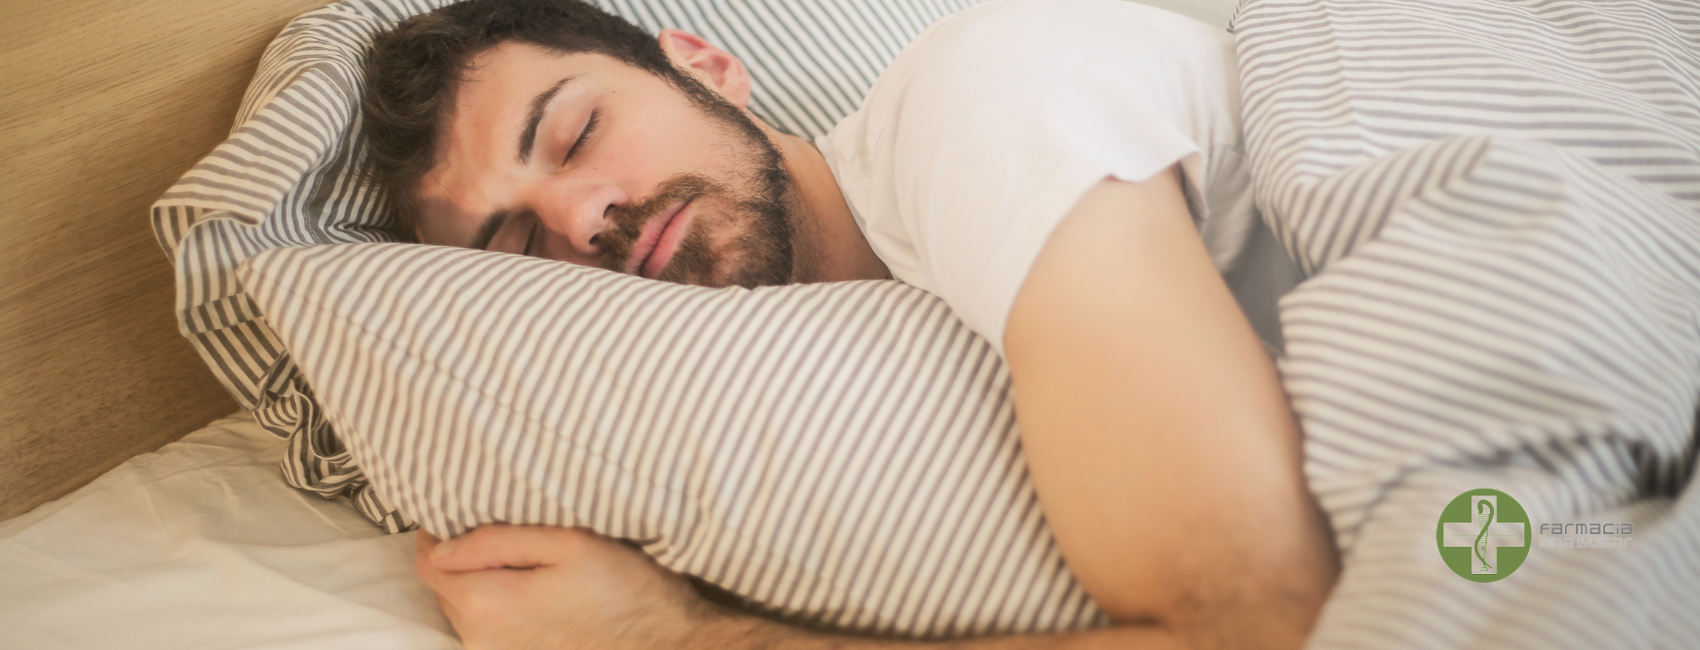 Soluciones para combatir el insomnio